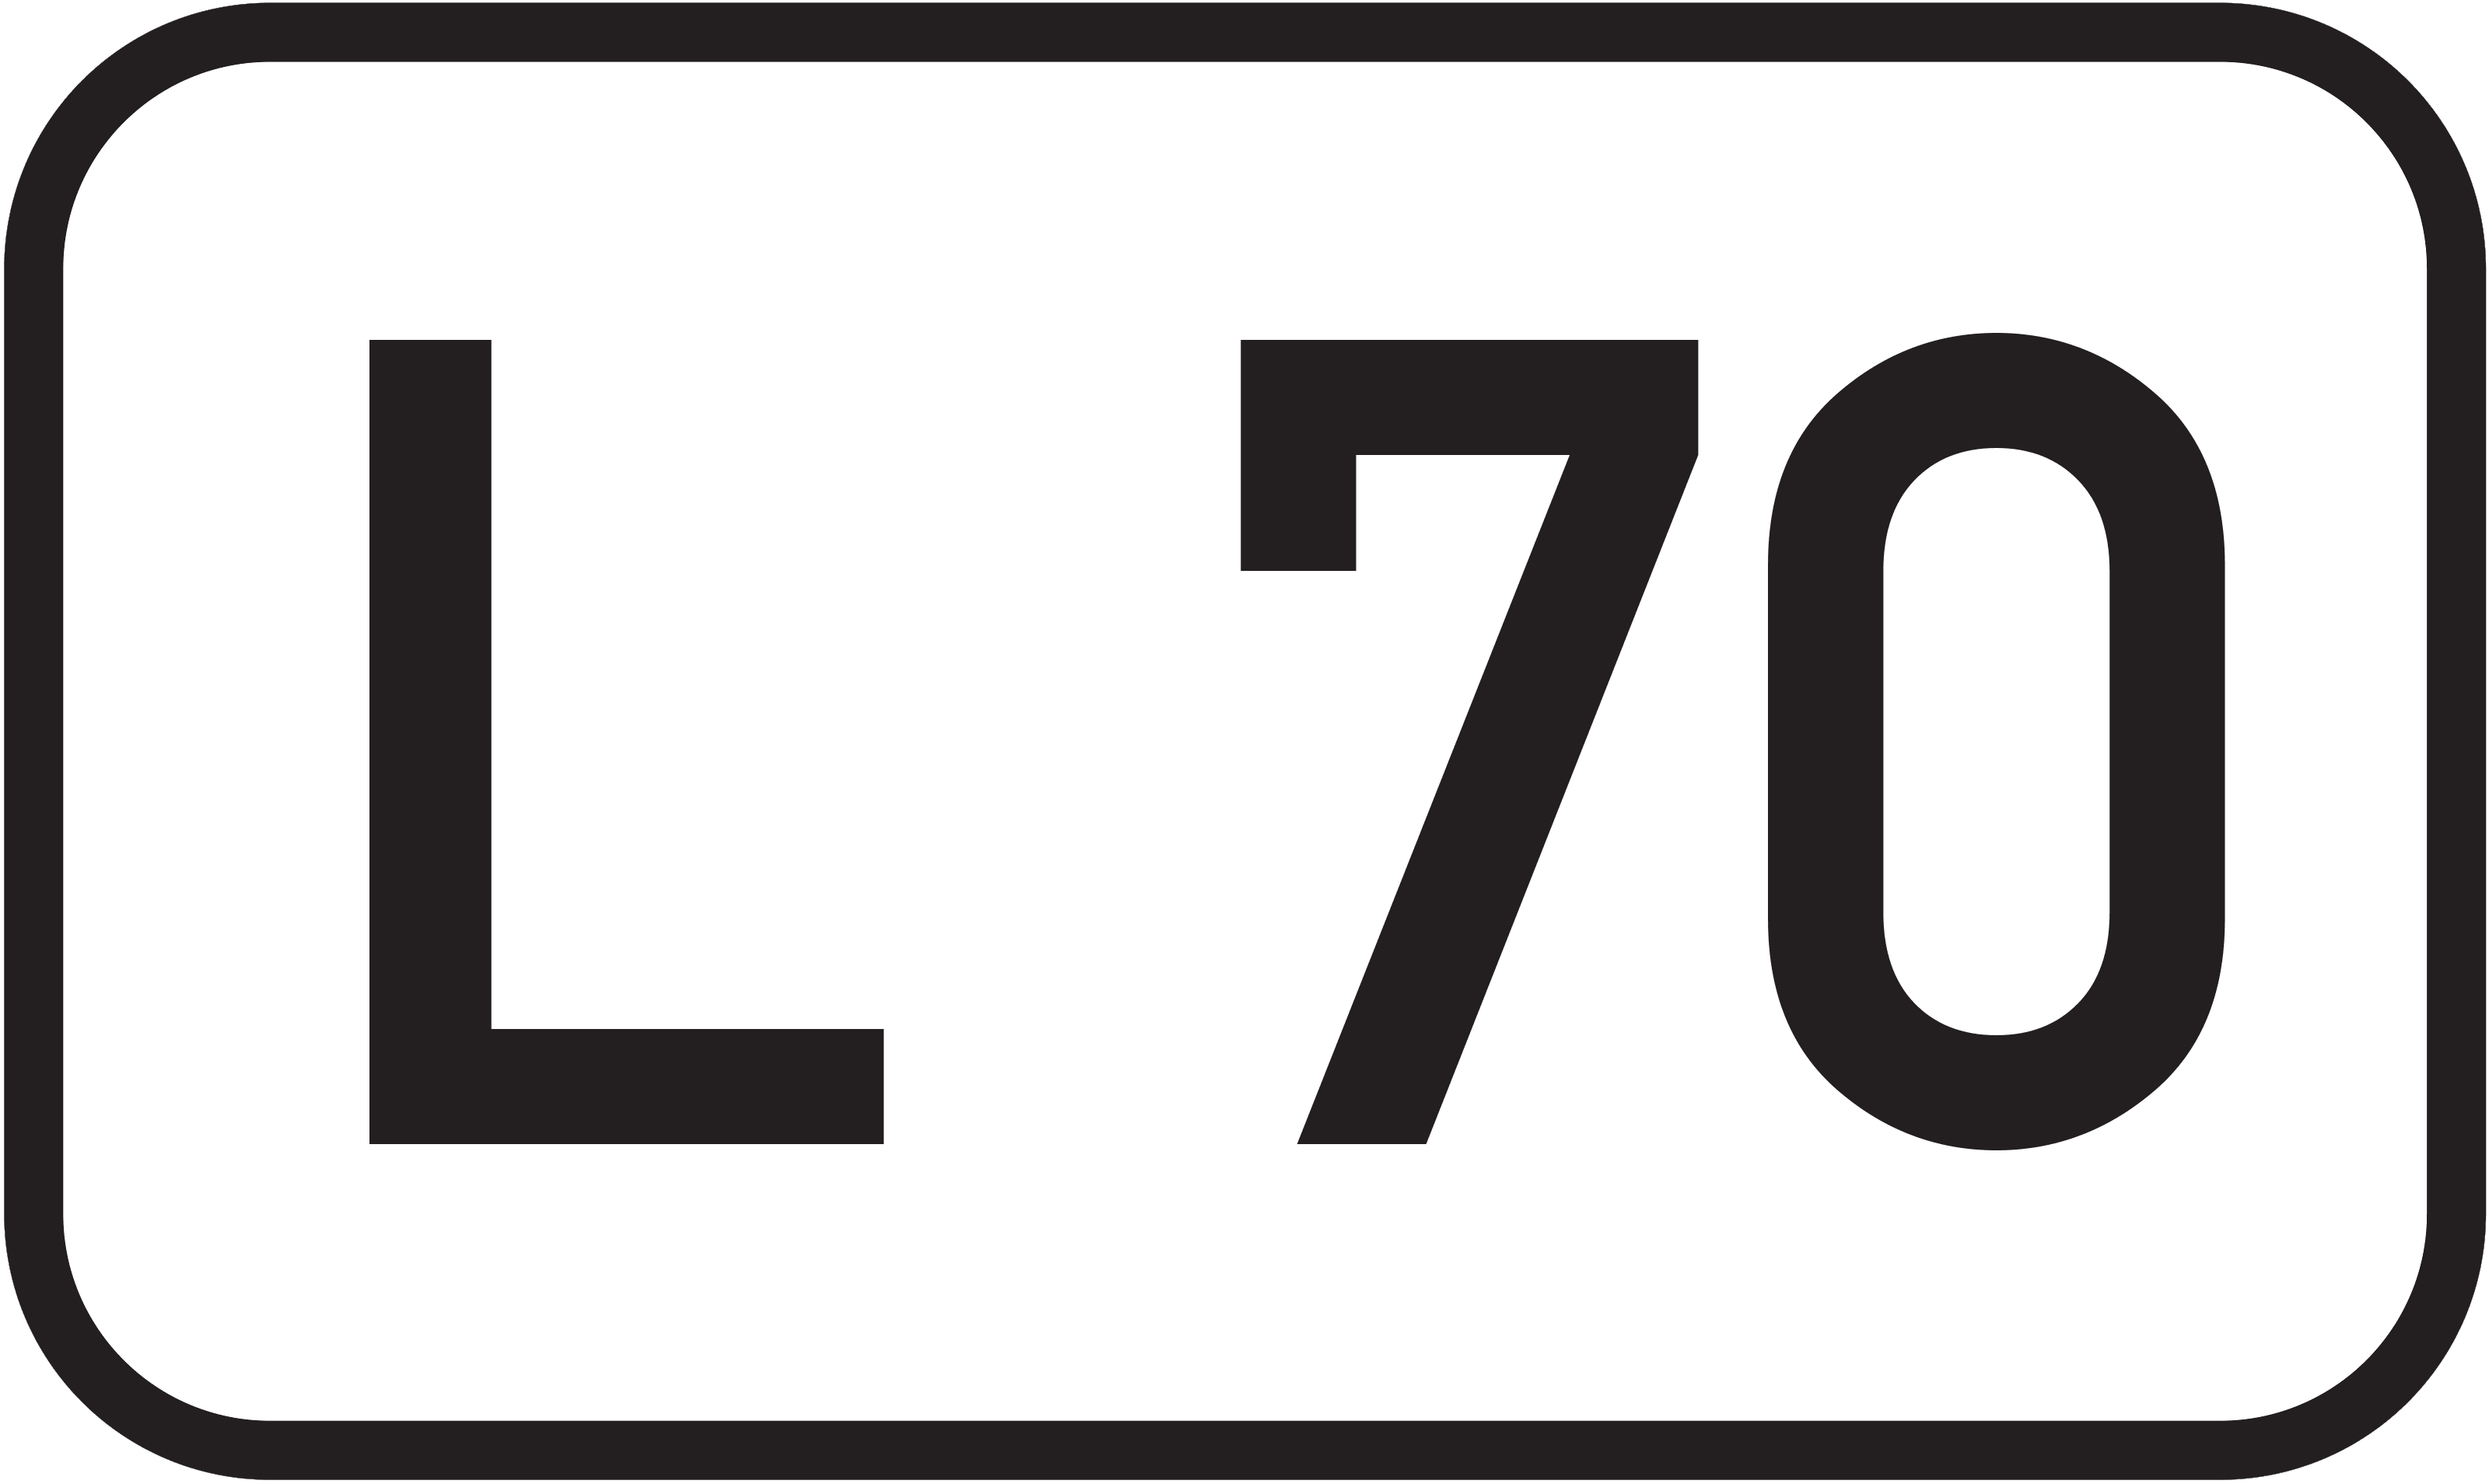 Landesstraße L 70